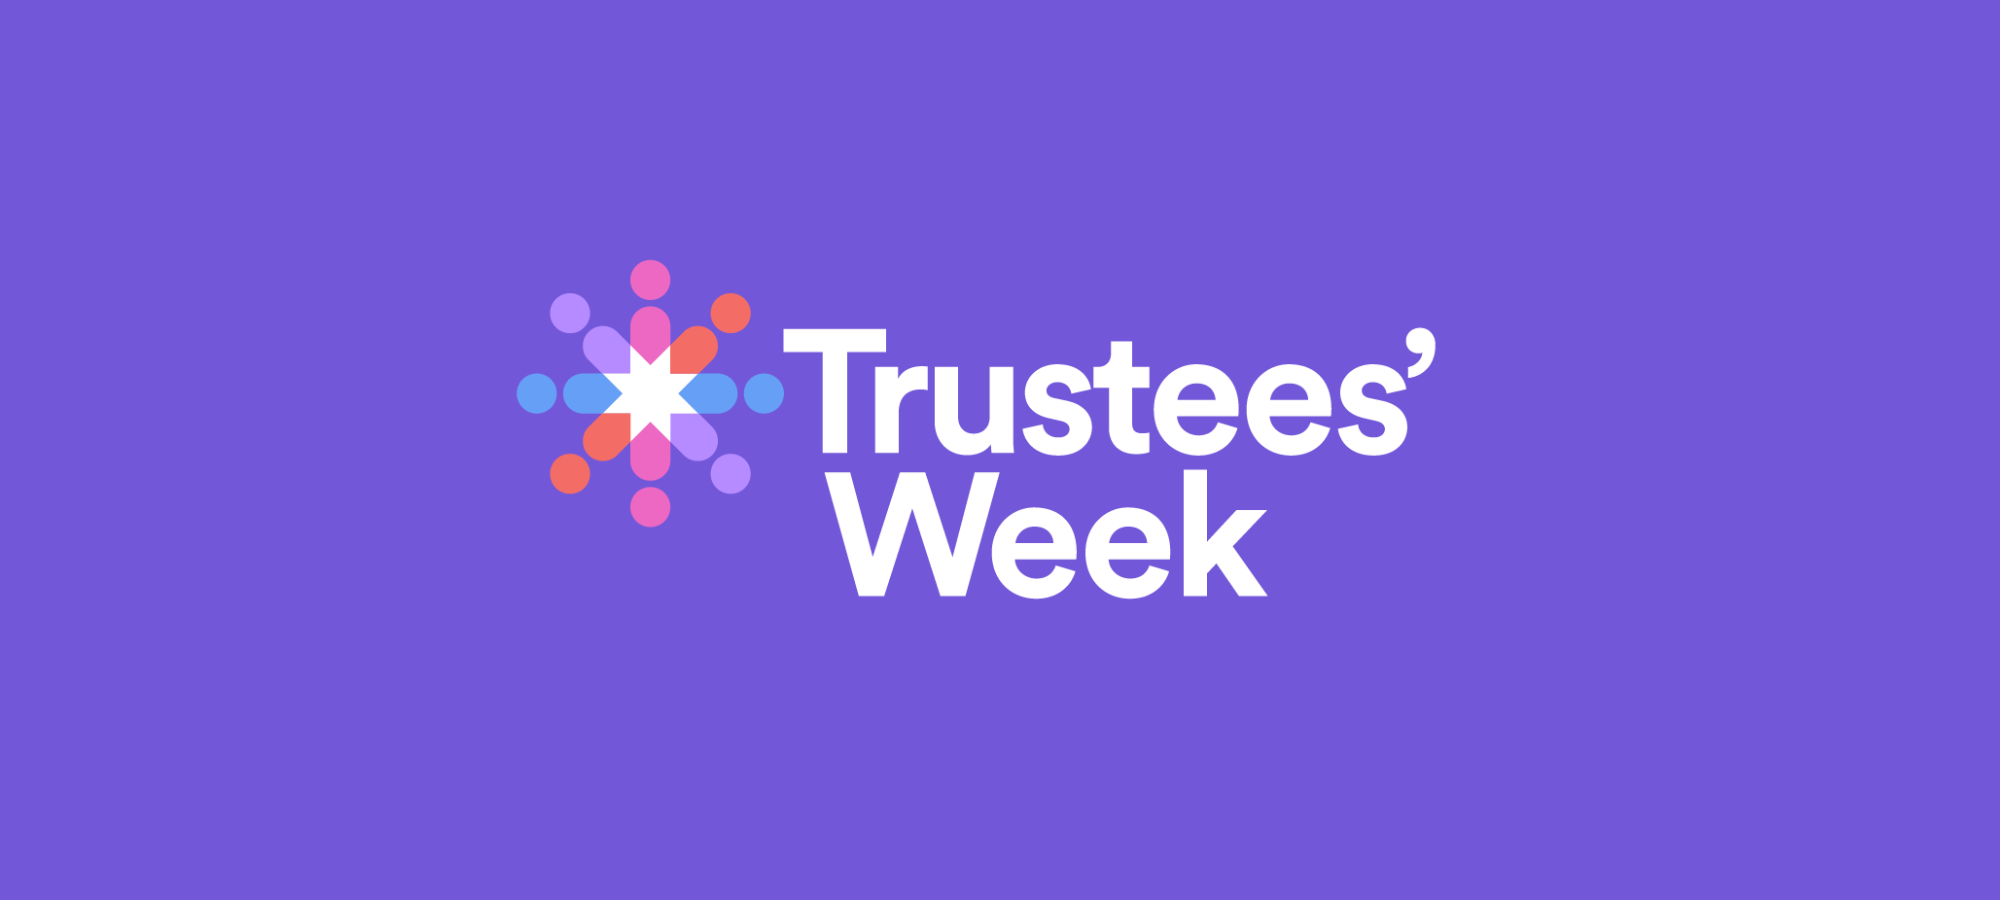 Trustees' Week